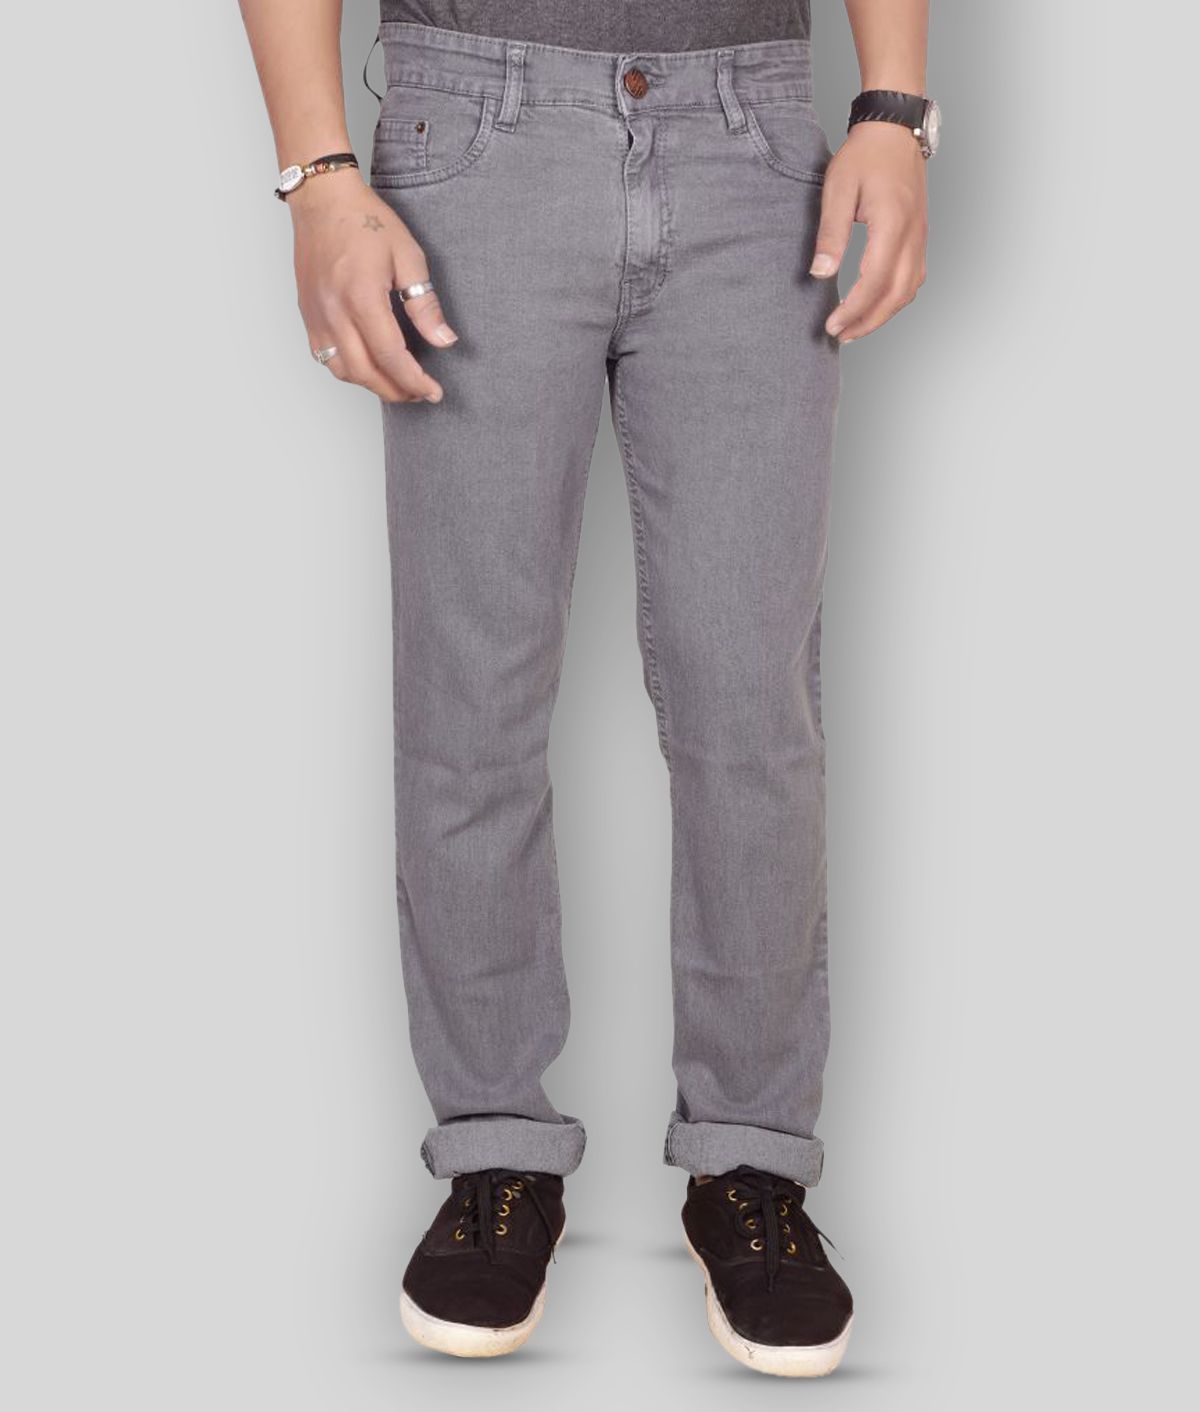 JB JUST BLACK - Grey Cotton Blend Regular Fit Men's Jeans ( Pack of 1 )